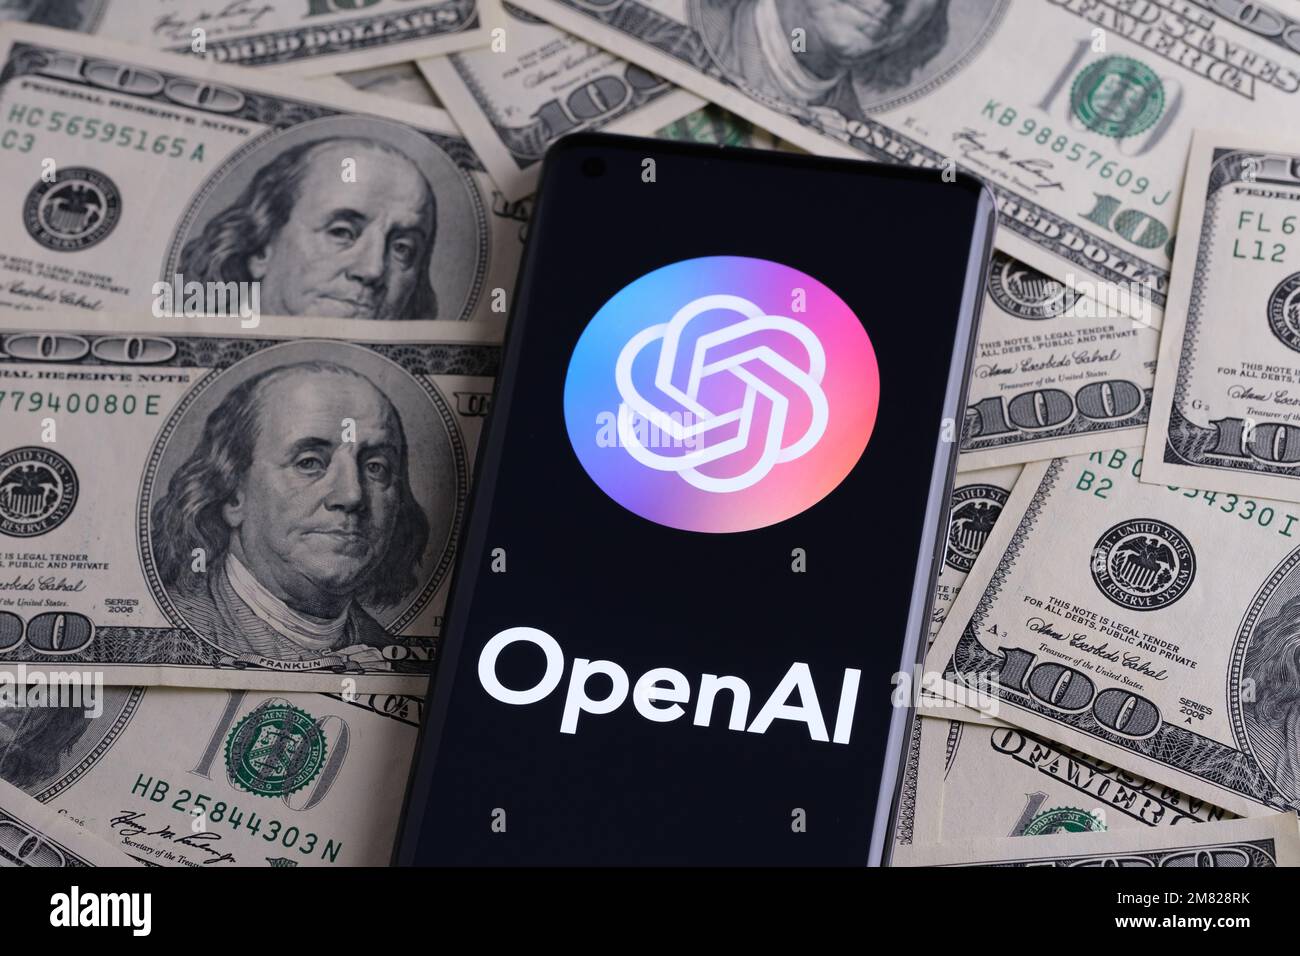 OPENAI wird auf dem Smartphone angezeigt, das auf einem Haufen Bargeld platziert wird. Open AI ist ein Unternehmen, das für seine generative ChatGPT- und DALL-E-AI-Software bekannt ist. Stafford, Stockfoto